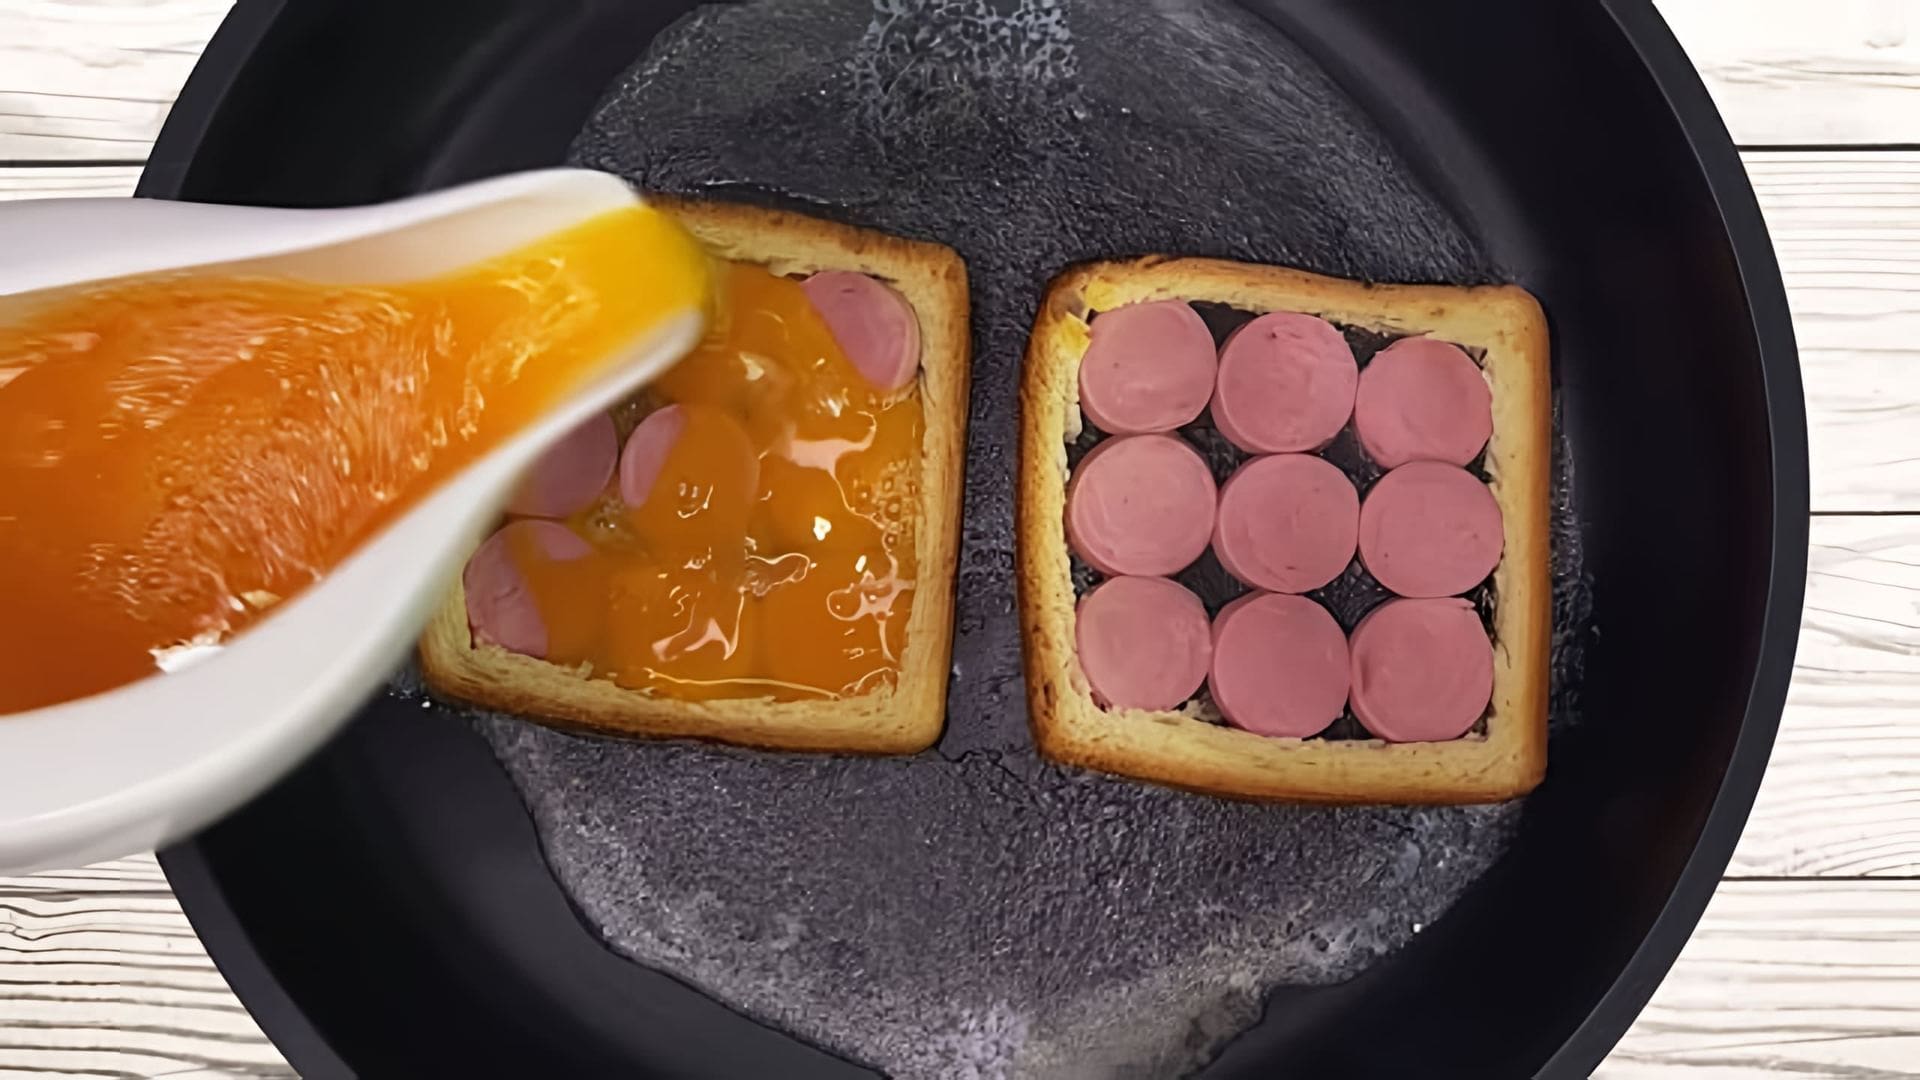 "Идеальный завтрак из сосисок и яиц за 5 минут" - это видео-ролик, который демонстрирует простой и быстрый способ приготовления вкусного и питательного завтрака